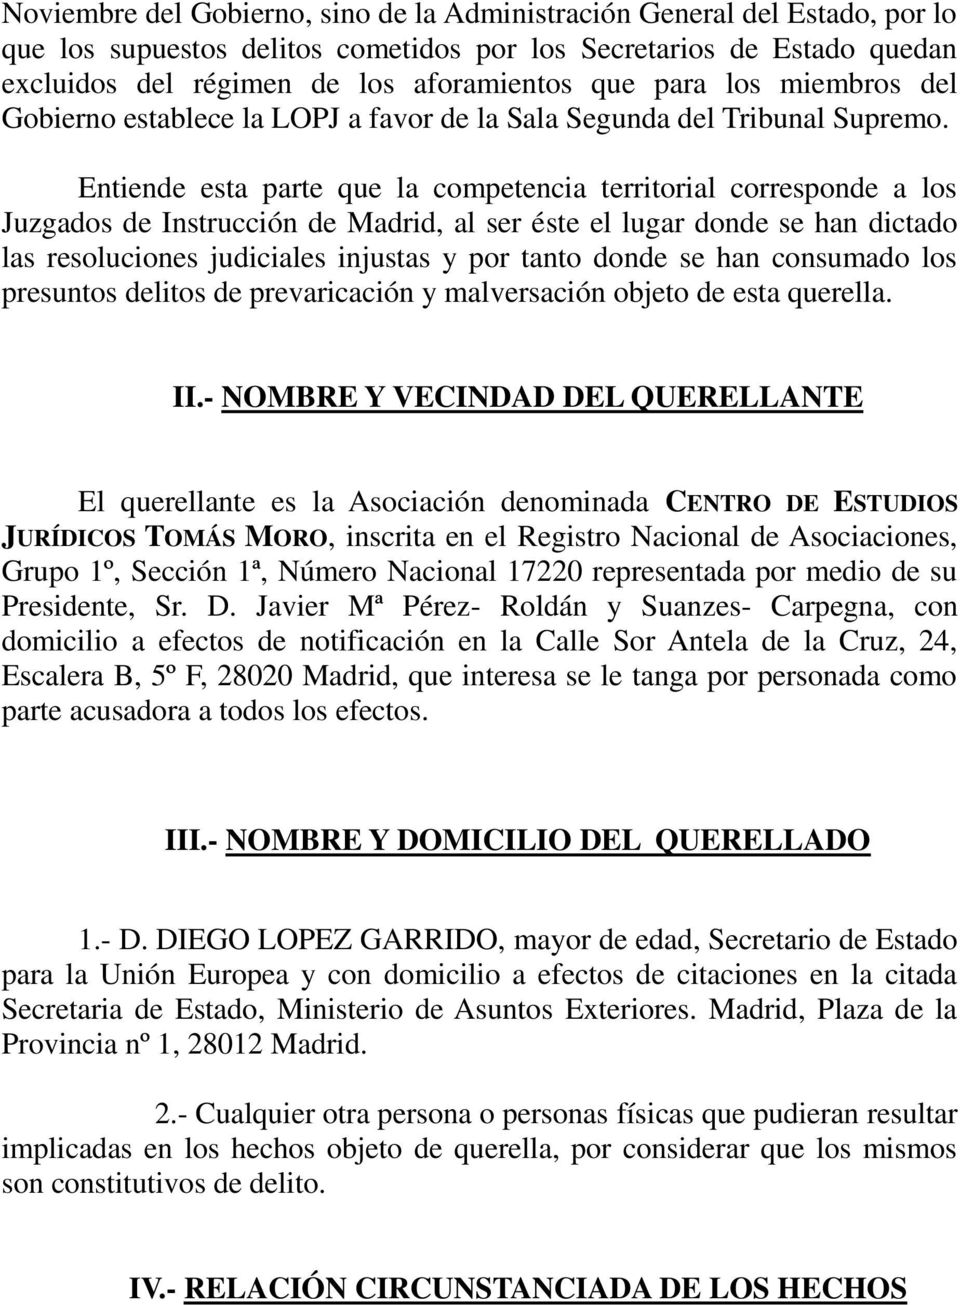 Entiende esta parte que la competencia territorial corresponde a los Juzgados de Instrucción de Madrid, al ser éste el lugar donde se han dictado las resoluciones judiciales injustas y por tanto